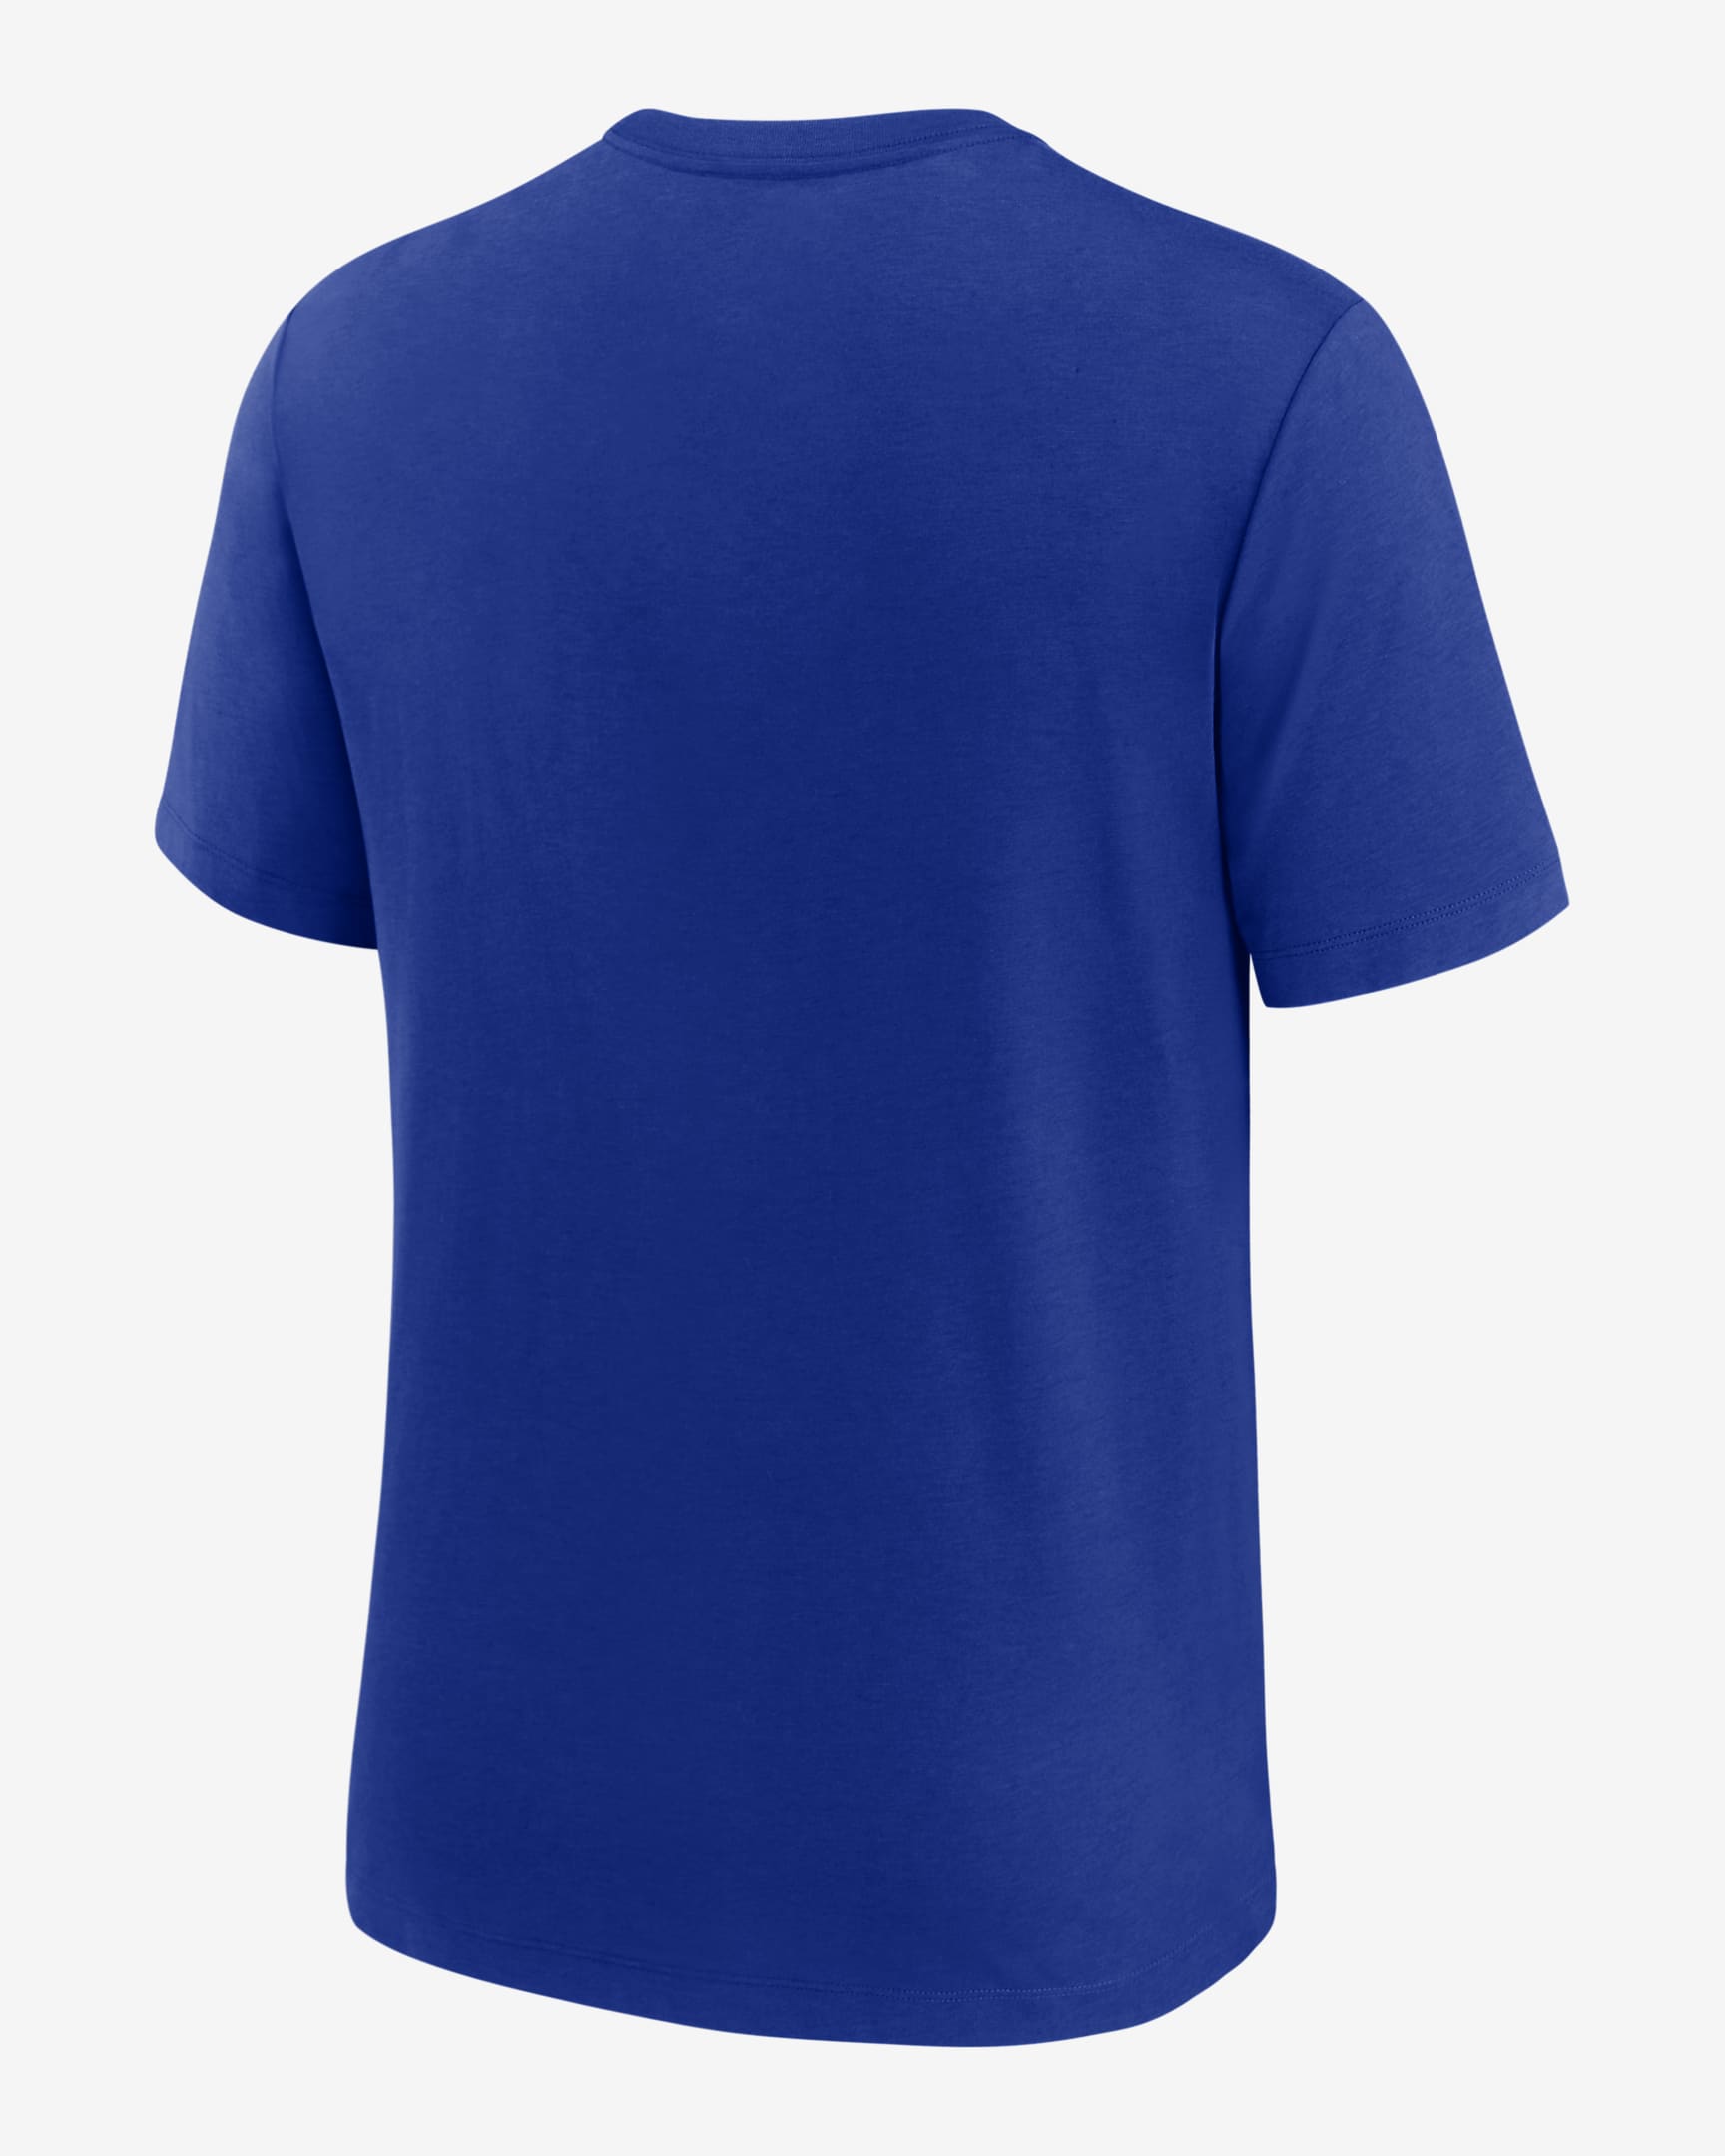 Buffalo Bills Rewind Logo Men's Nike NFL T-Shirt. Nike.com